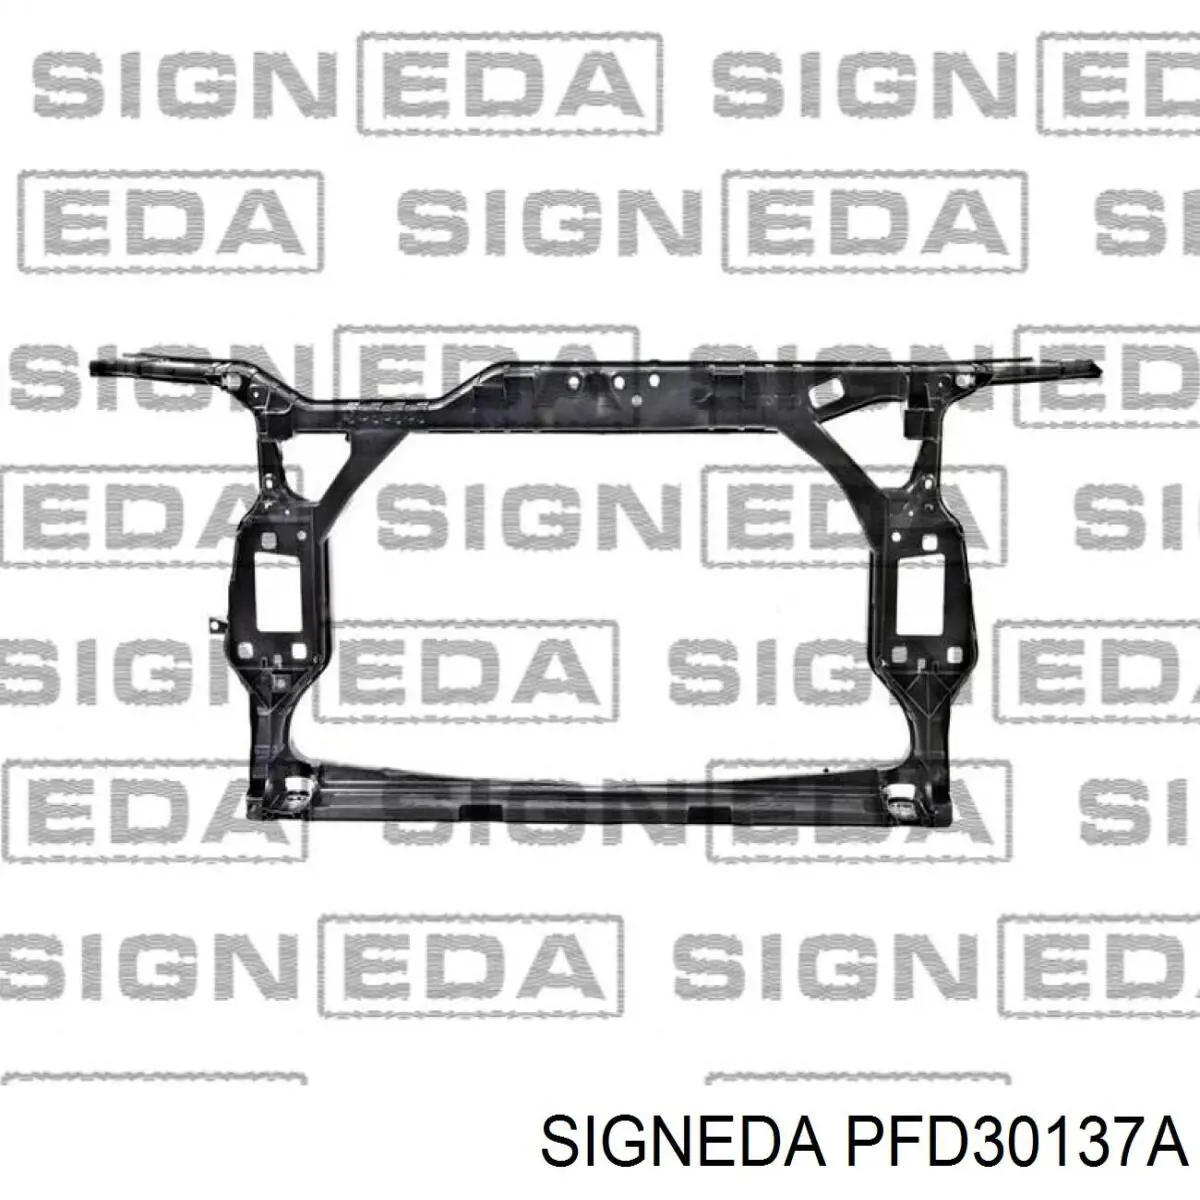 PFD30137A Signeda суппорт радиатора в сборе (монтажная панель крепления фар)